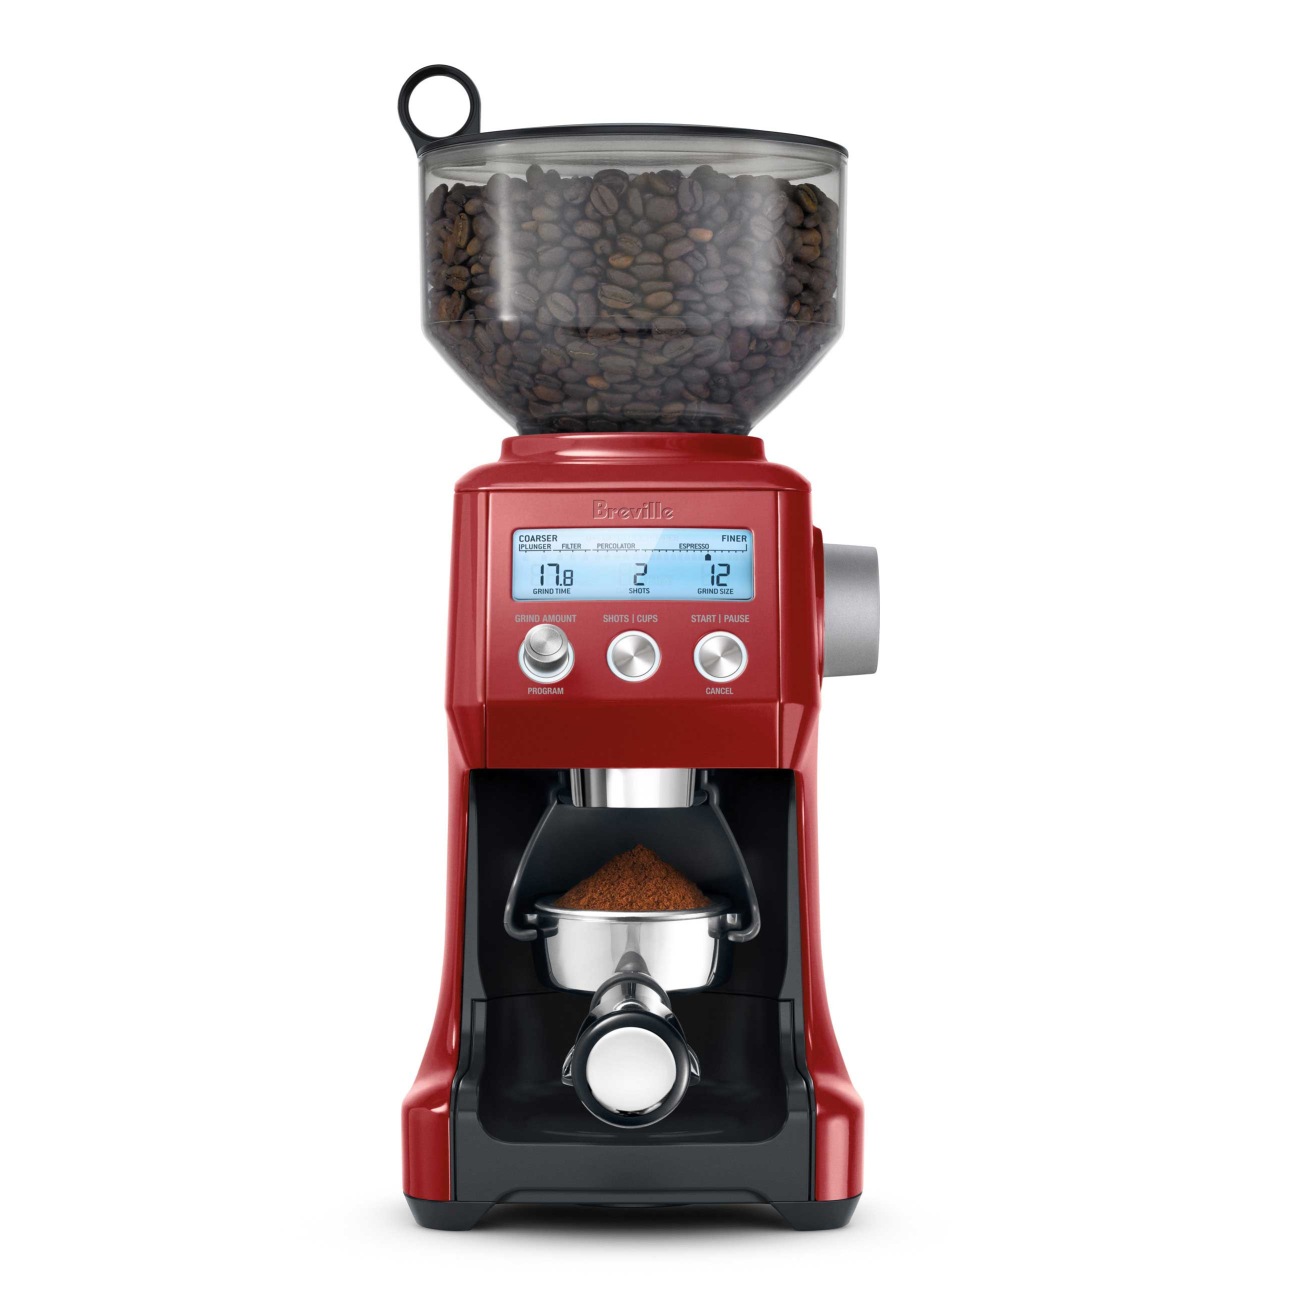 The Smart Grinder Pro Coffee Grinder Breville